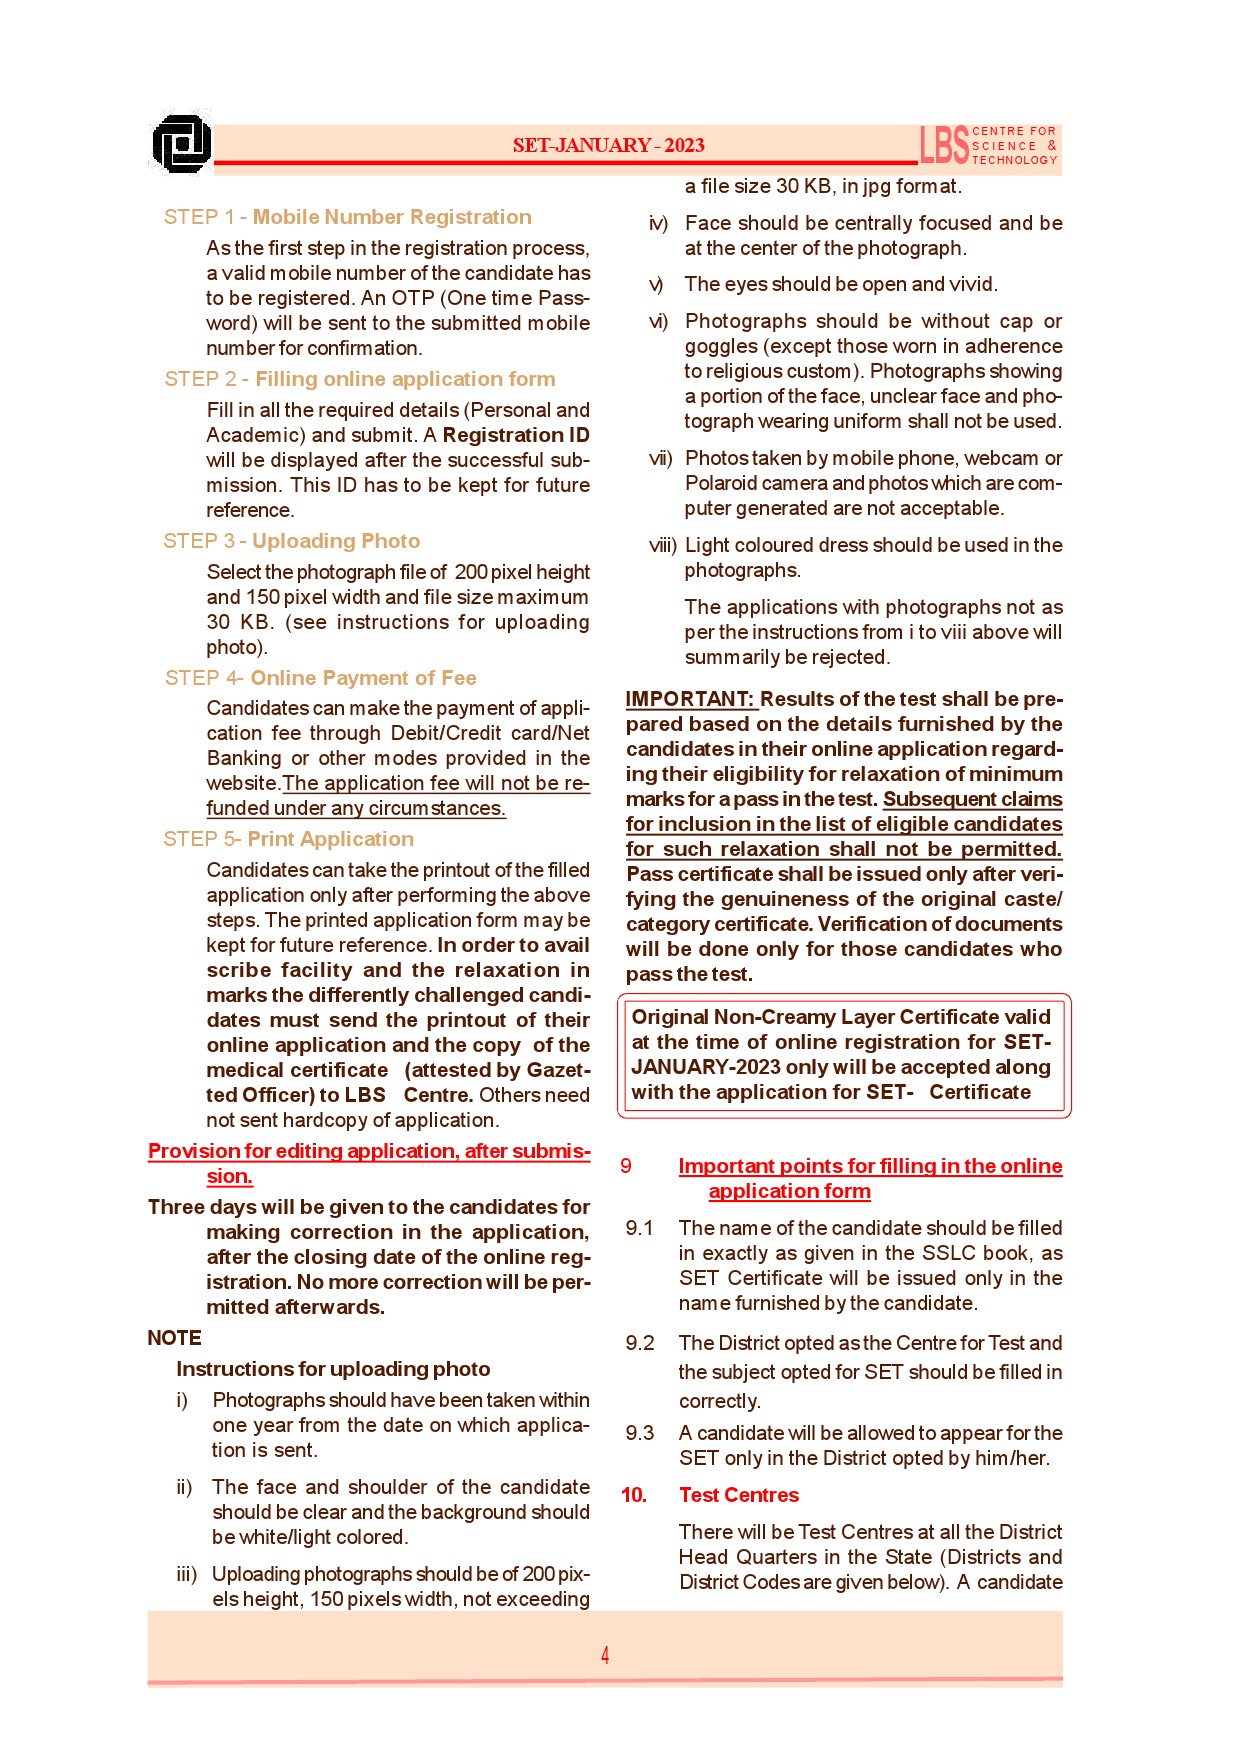 State Eligibility Test January 2023 Prospectus - Notification Image 6